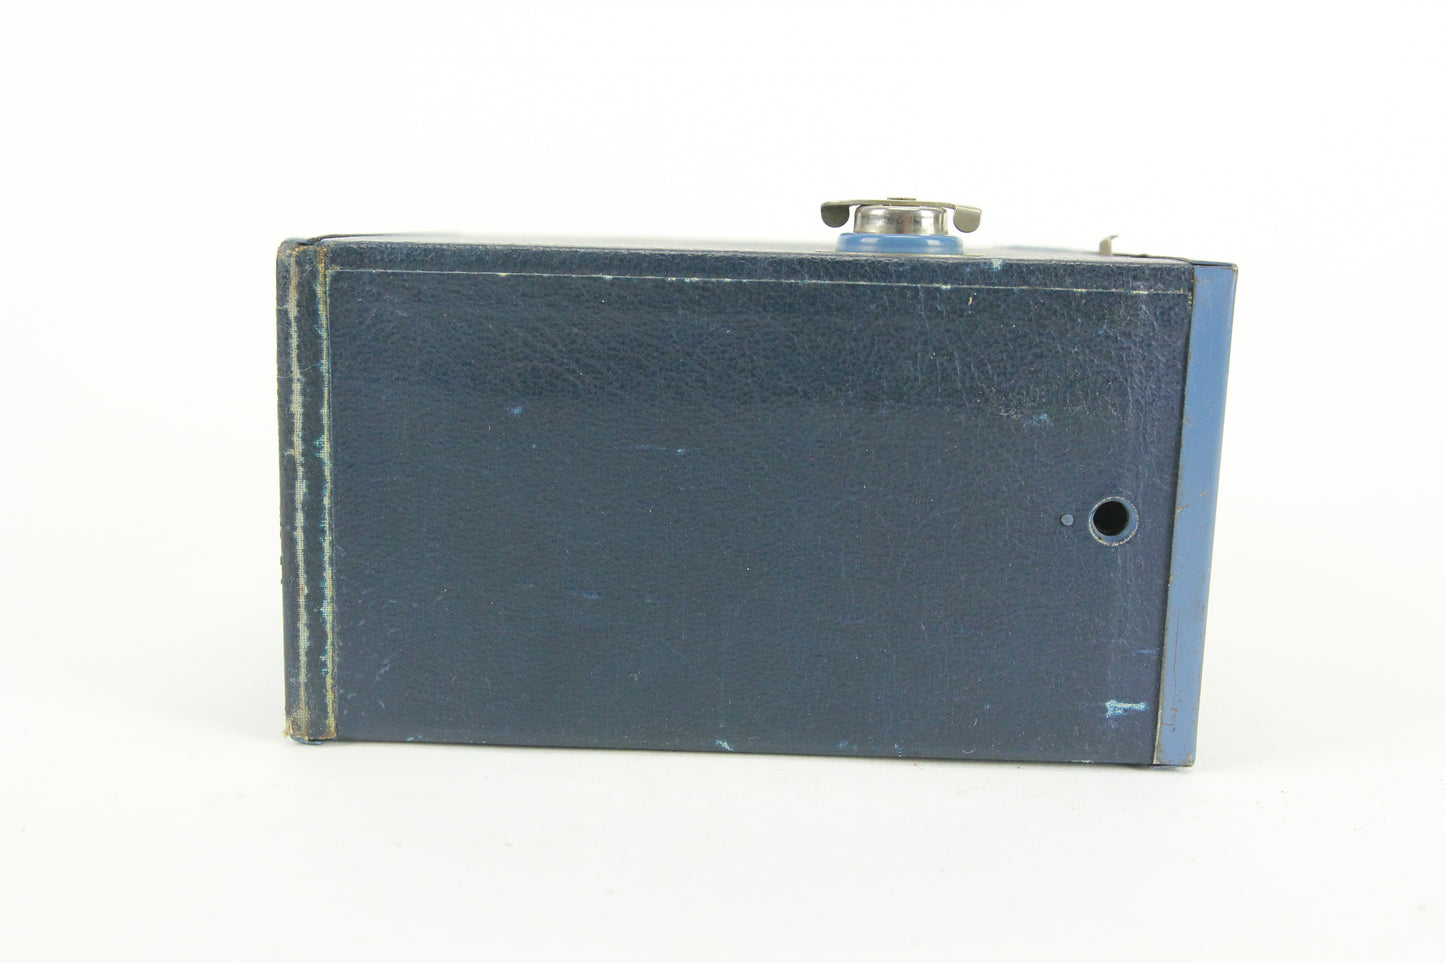 Eastman Kodak No. 2A Brownie Model C Box Camera (Blue Color)